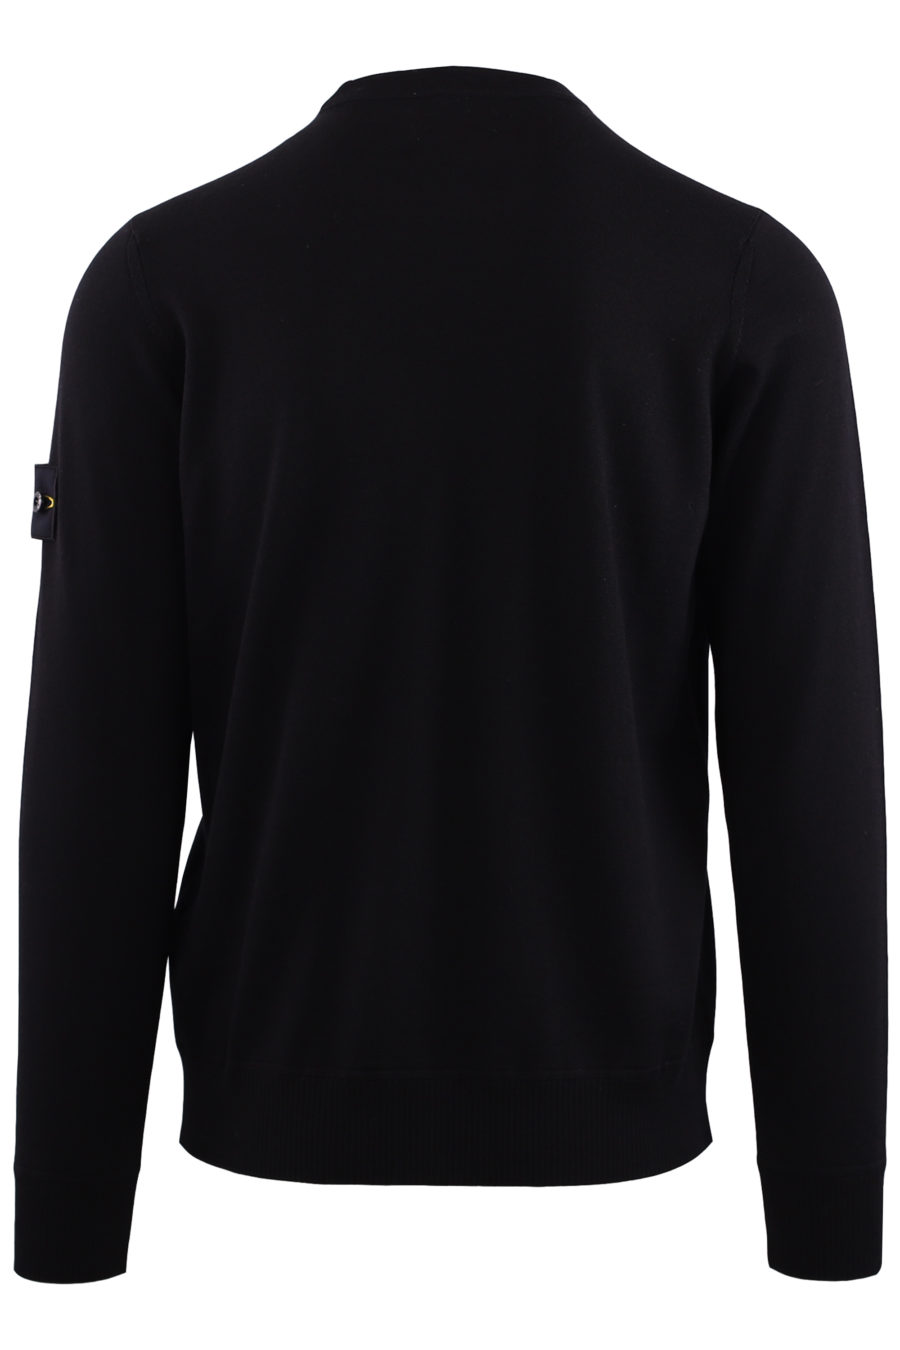 Jersey negro de lana con logo parche - IMG 7155